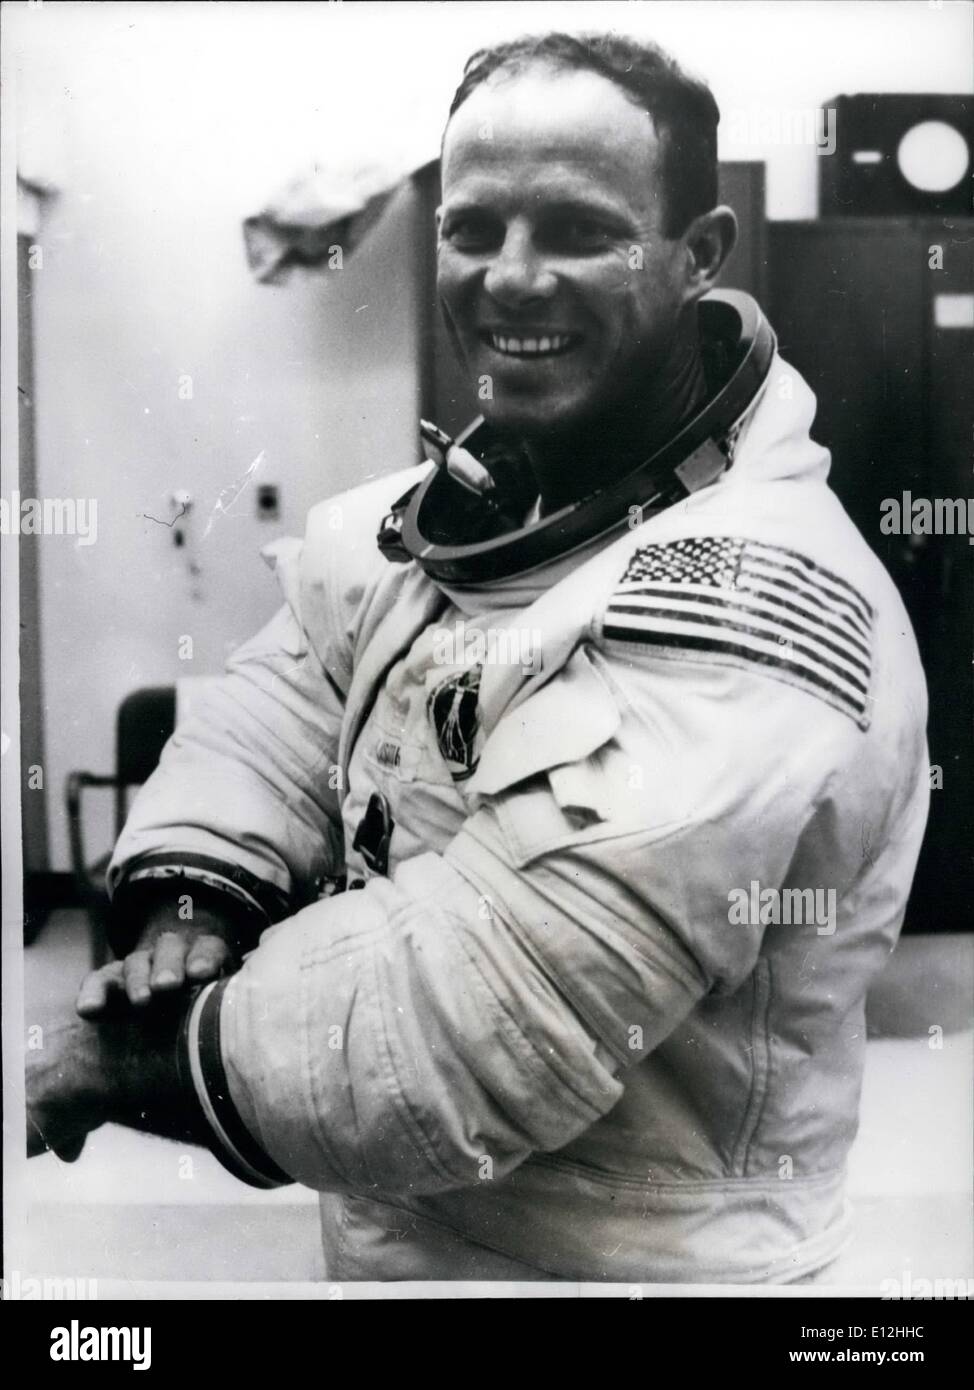 El 24 de febrero, 2012 - Miembro de Crrw de segunda misión Skylab tripulados: La fotografía muestra el Skylab 3 astronauta Jack R. Lousma, piloto de la segunda misión tripulada debido para el lanzamiento del Skylab el 28 de julio. Él es visto duri g~~un traje de ejercicio. Foto de stock